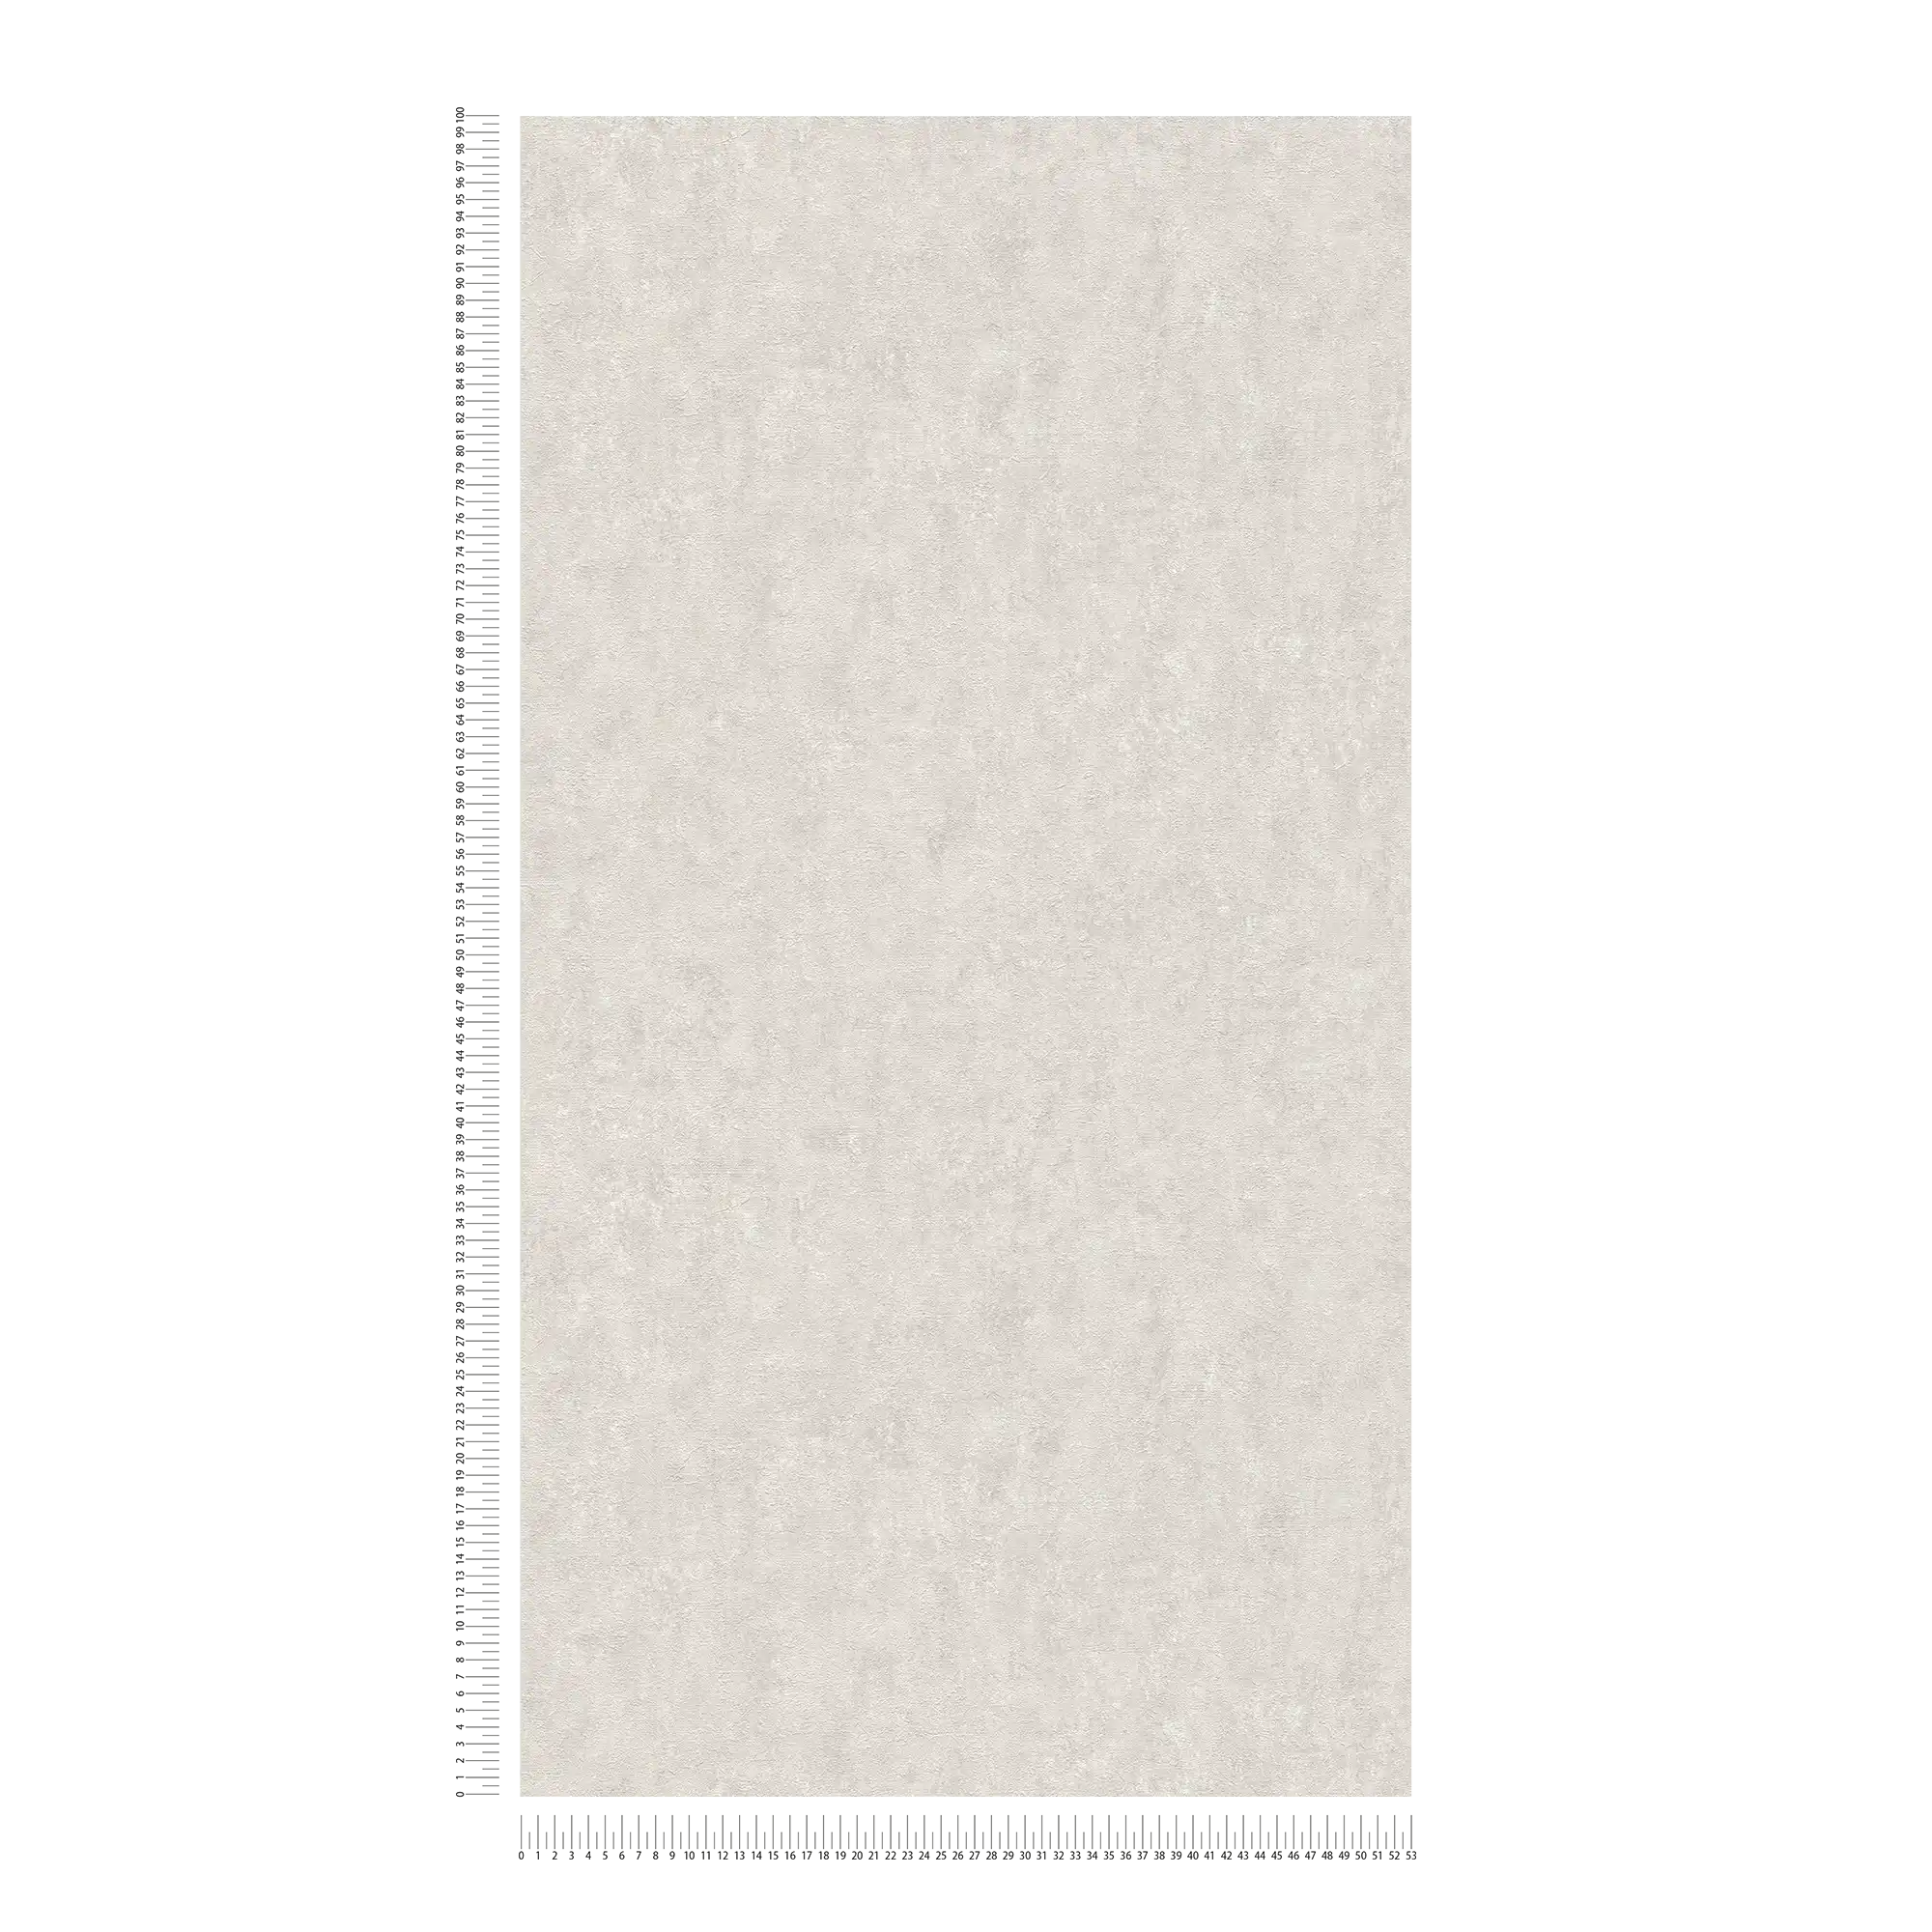             Carta da parati in gesso ottico con effetto struttura in grigio chiaro
        